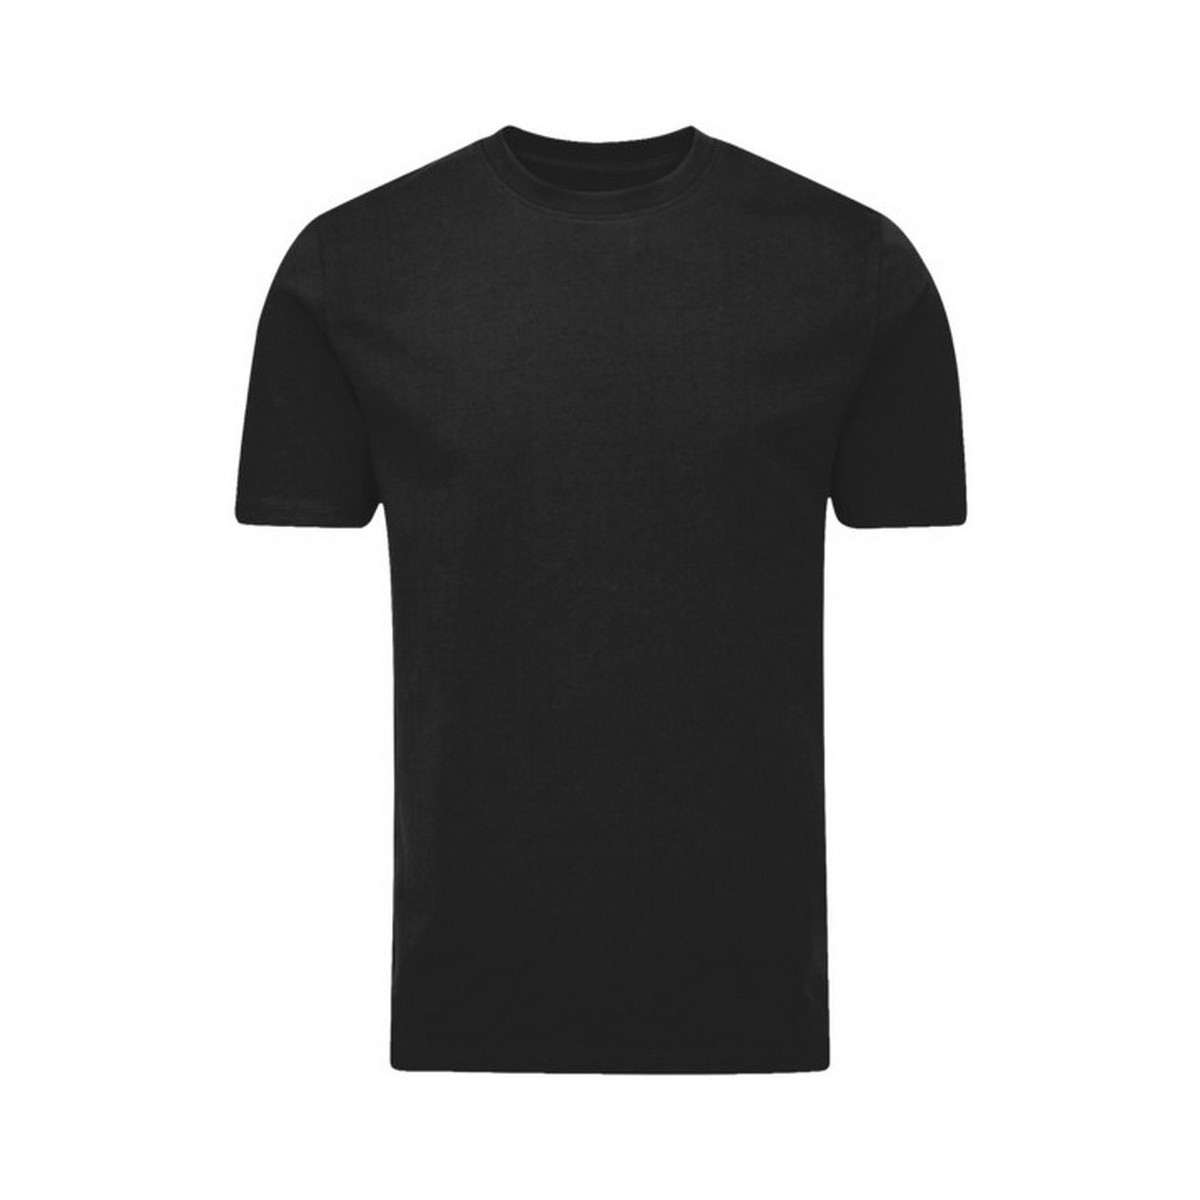 Abbigliamento T-shirts a maniche lunghe Mantis Essential Nero